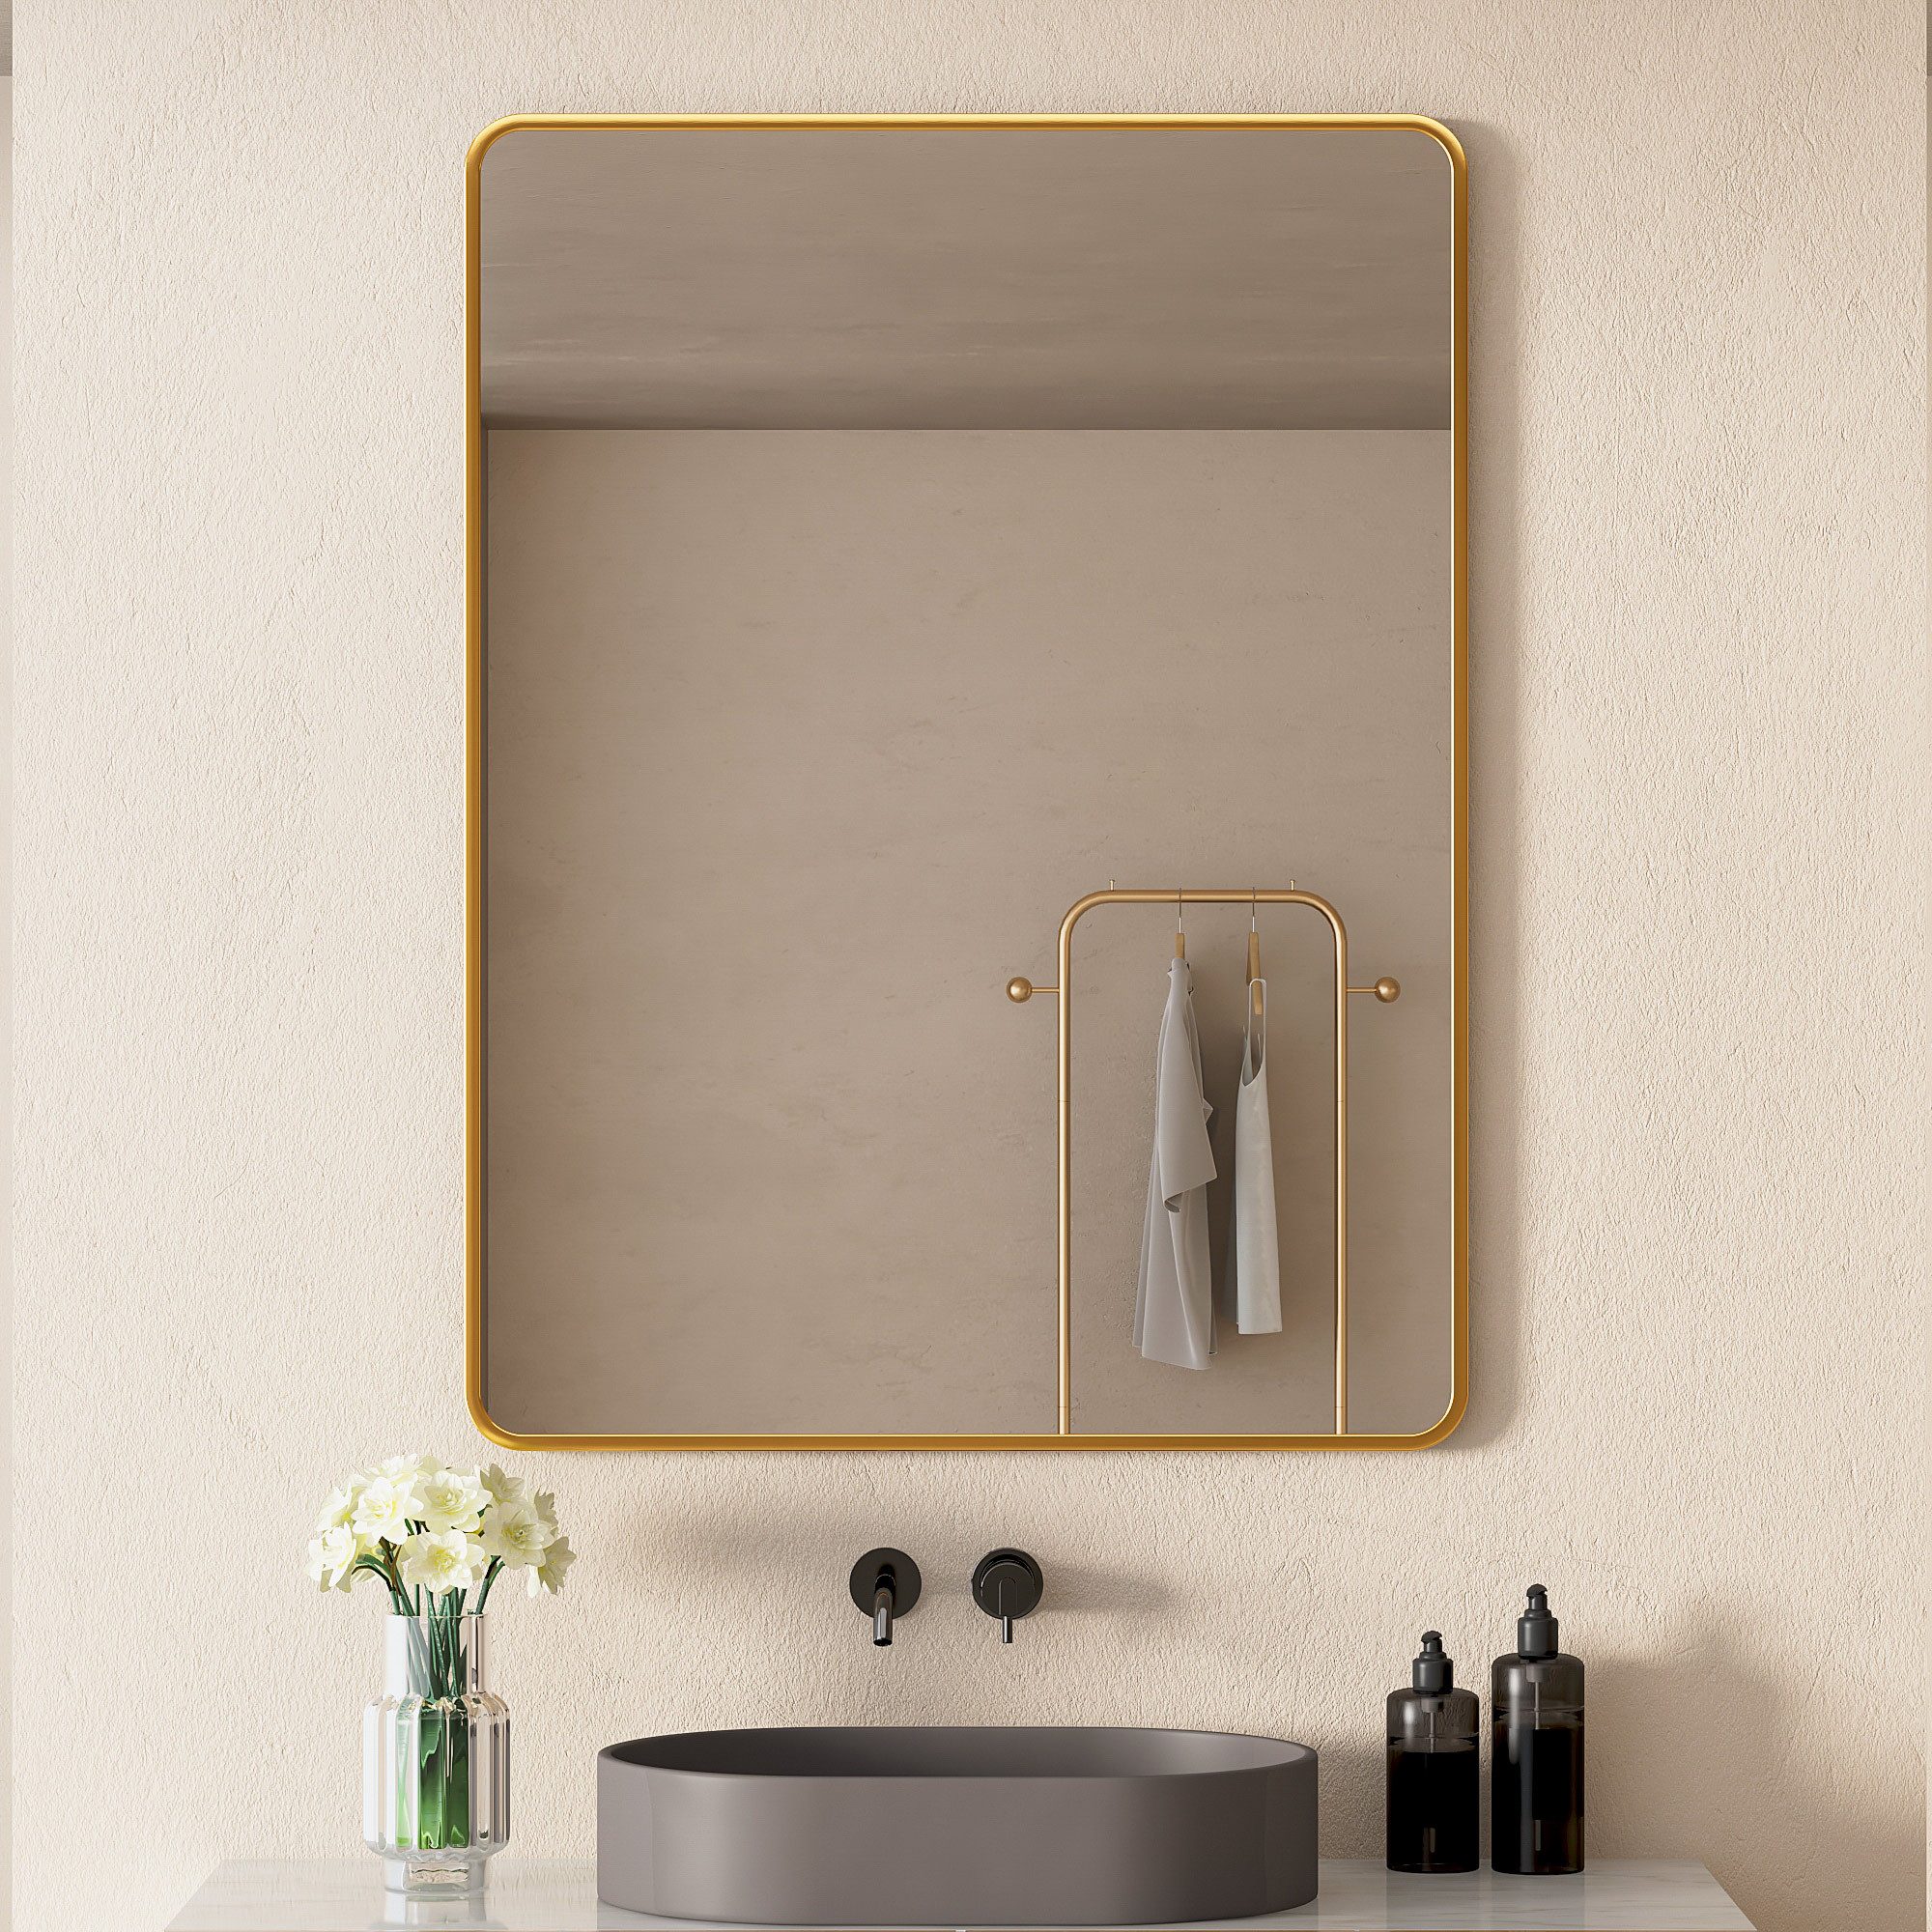 Hopibath Spiegel Gold Spiegel Badezimmer Badspiegel ohne beleuchtung (Rechteckig, 80x60, 70x50, 60x40), Alurahmen, 5mm Glas, Vertikal und Horizontal möglich